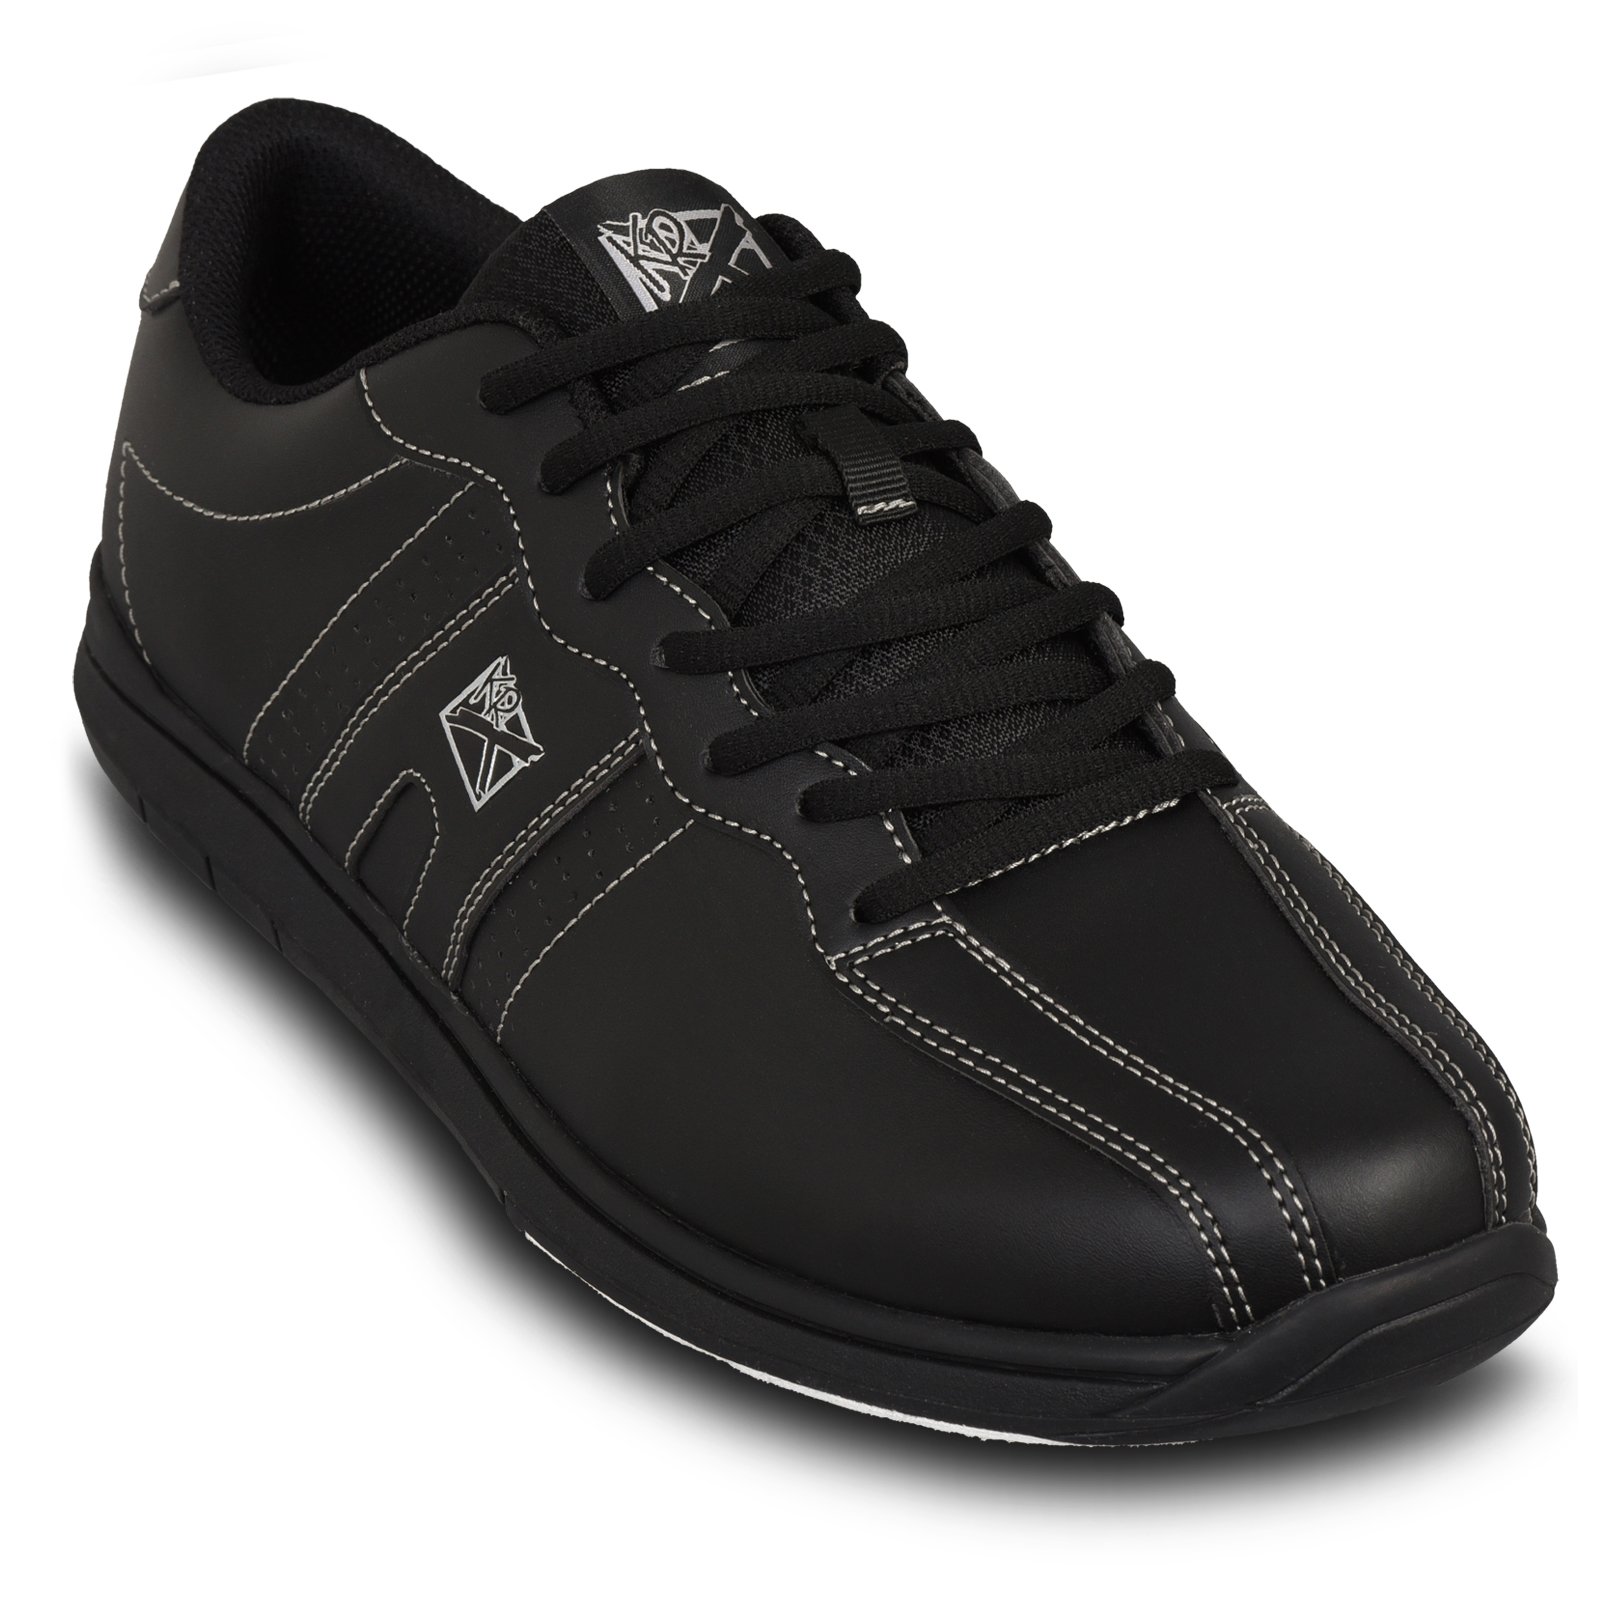 KR Strikeforce Men's O.P.P Bowling Shoes Black